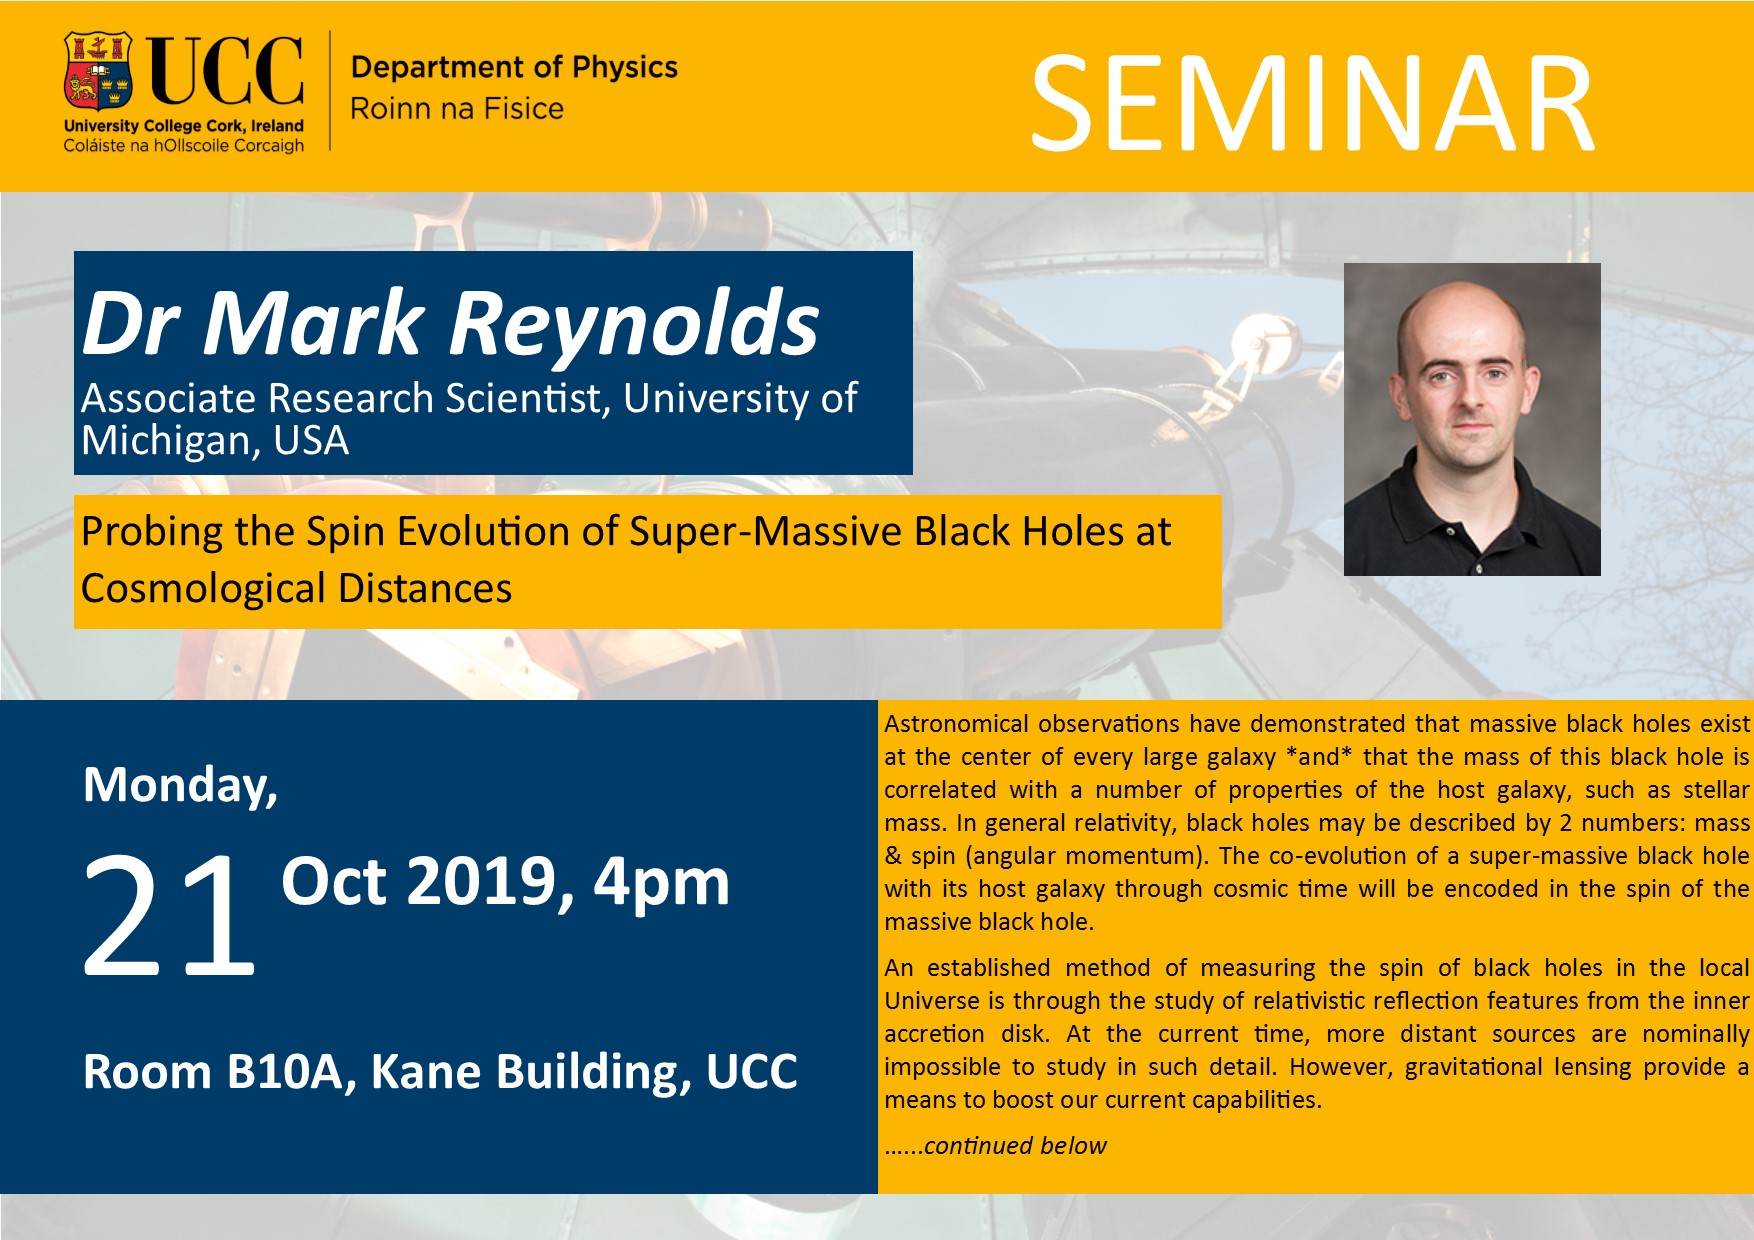 Mark Reynolds 21 Oct 2019 Seminar Poster